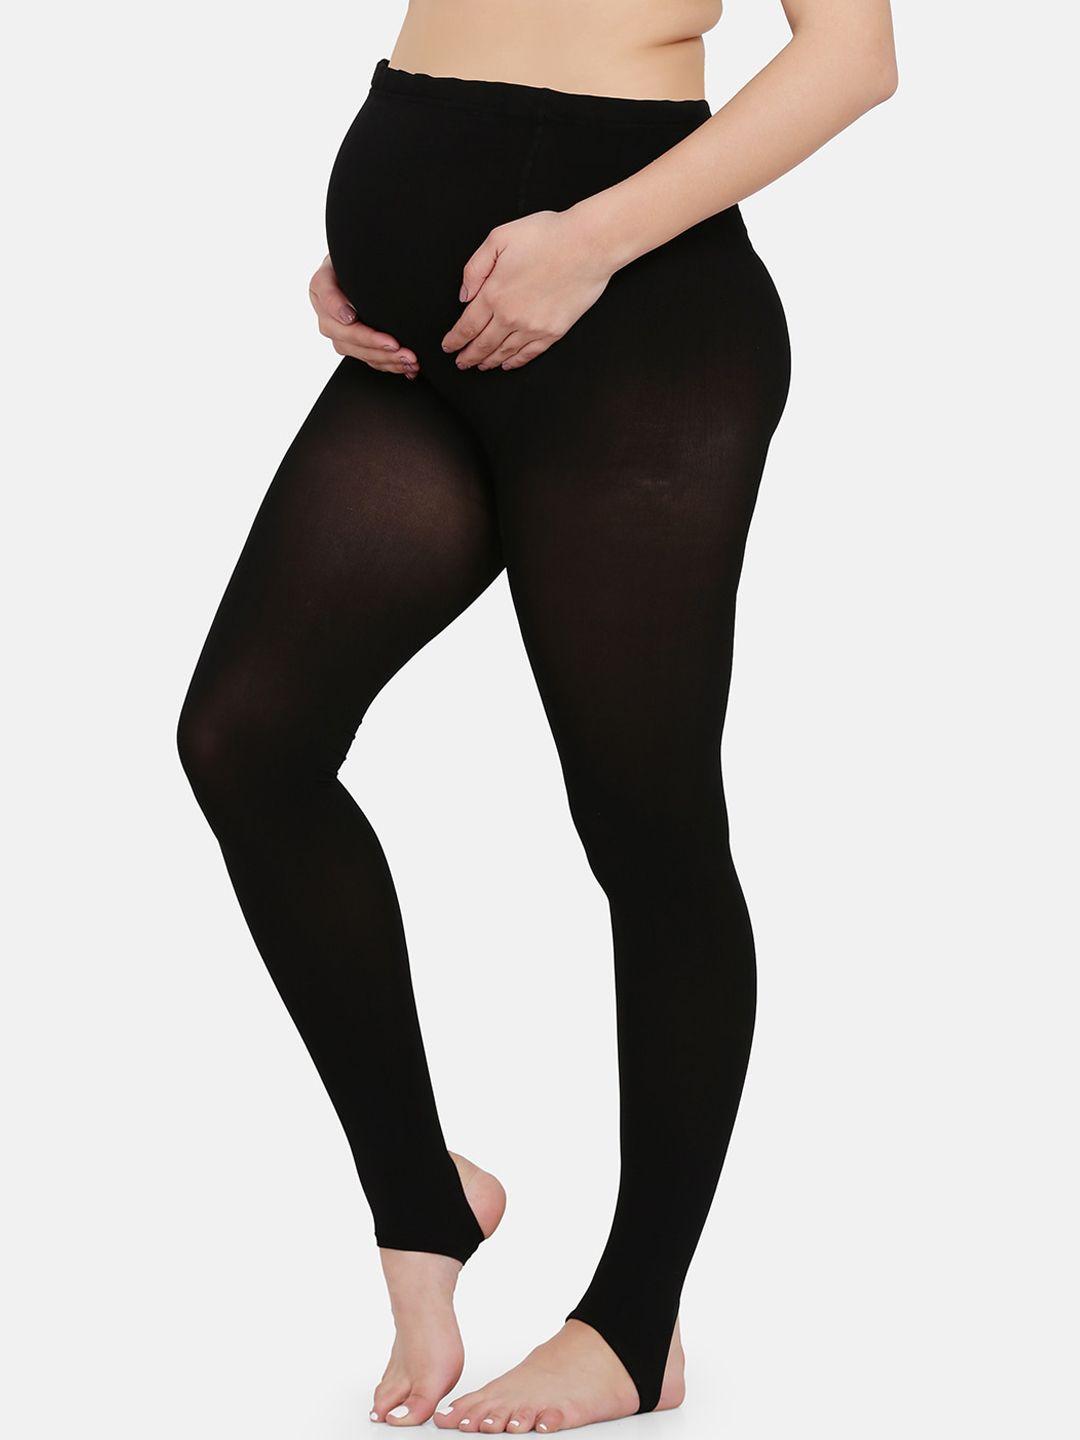 mamma presto women black solid maternity stockings